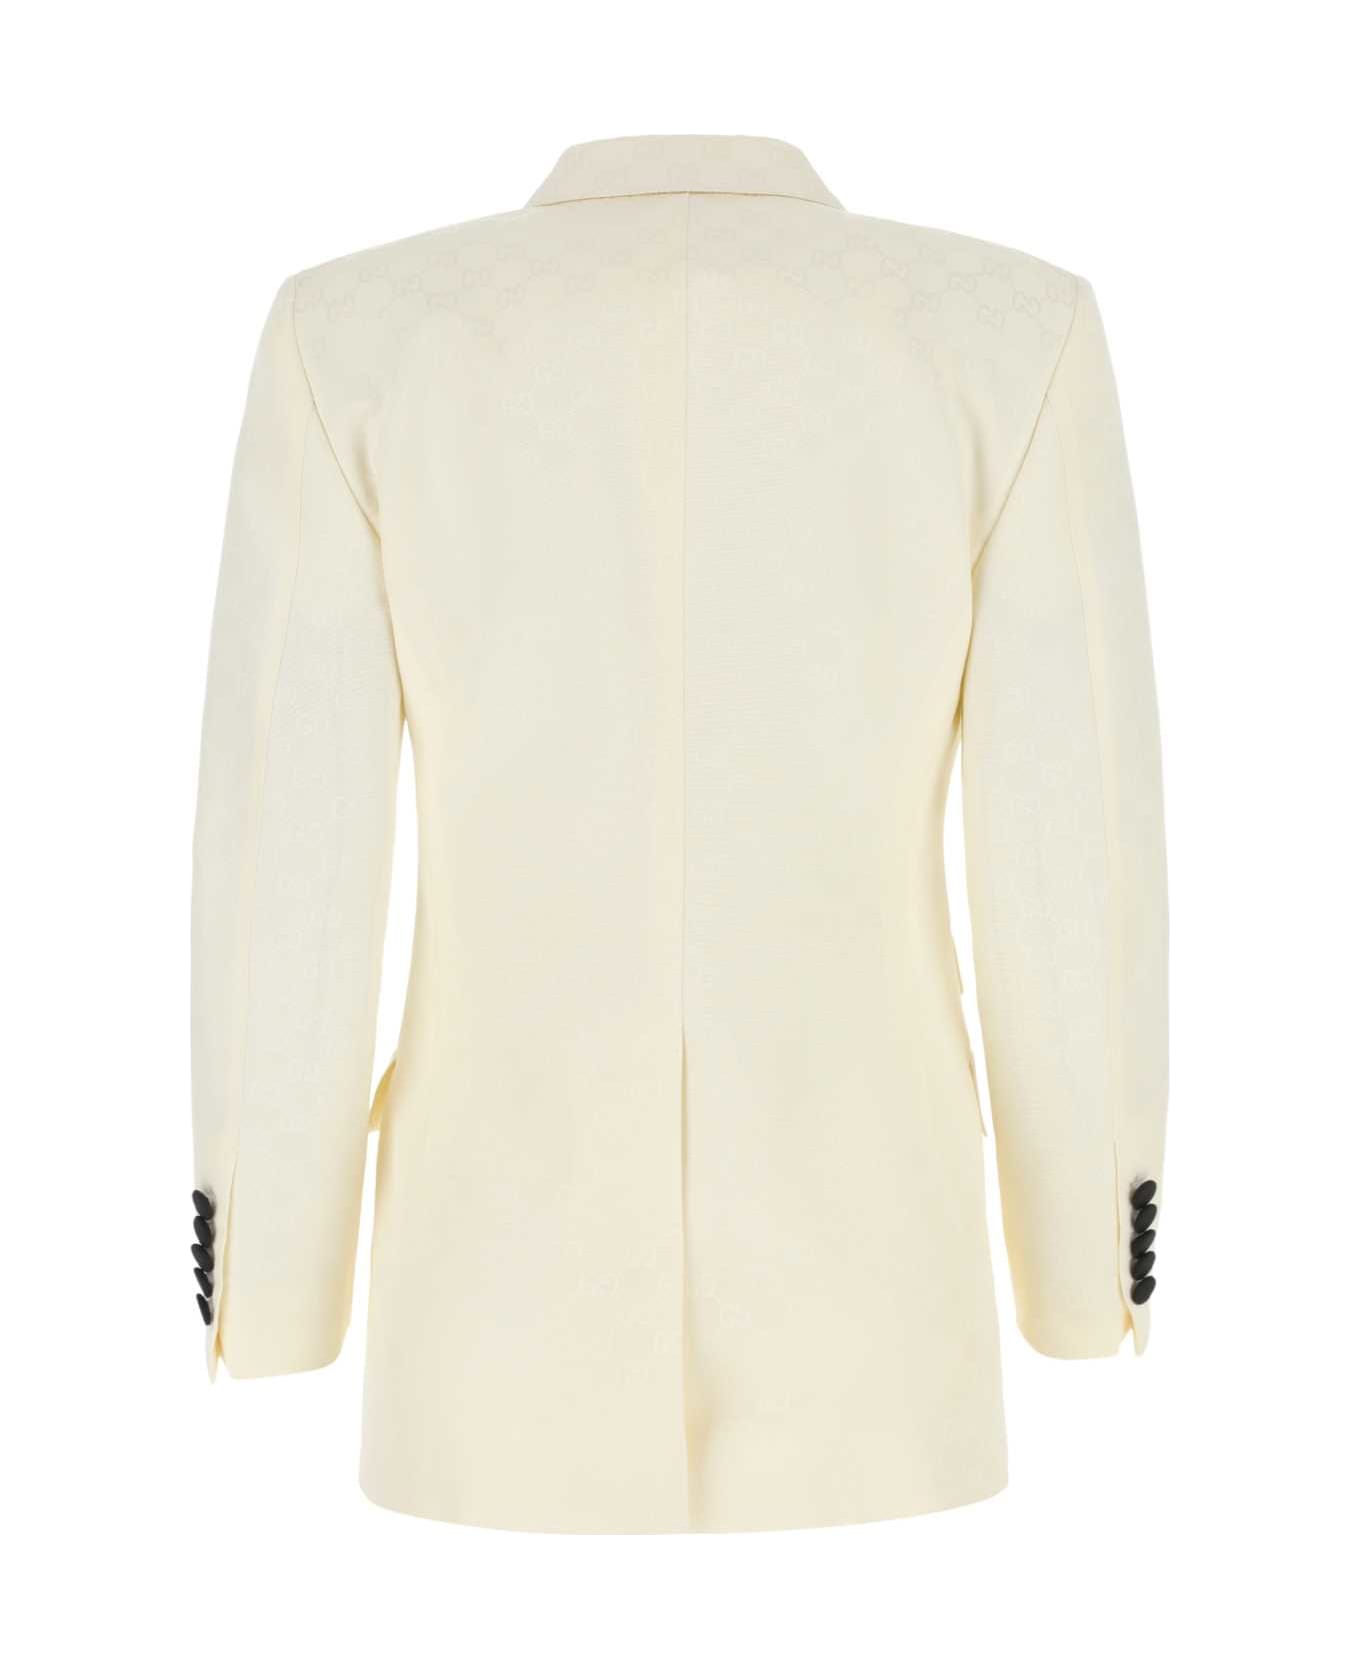 Gucci Embroidered Cotton Blend Blazer - Beige コート